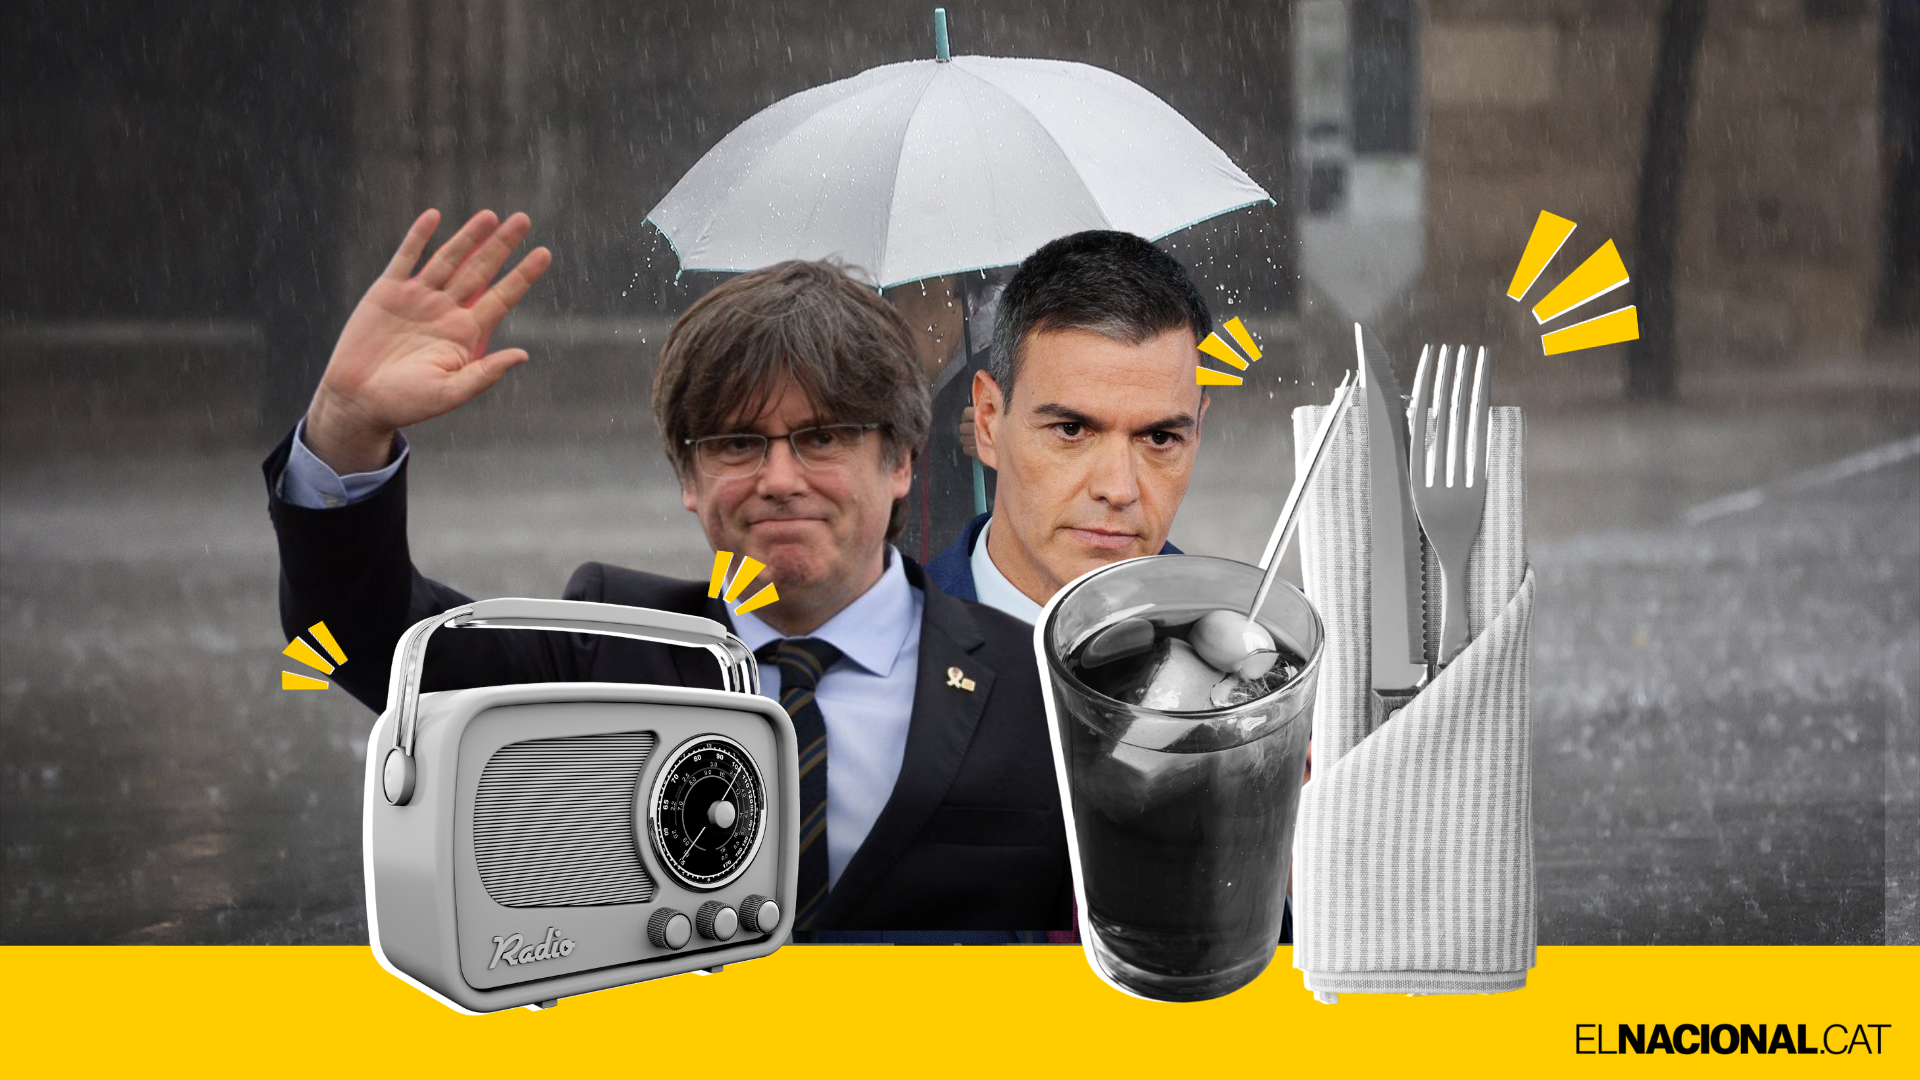 Negociaciones para la investidura, récord de catalanes y más: los 5 temas del momento